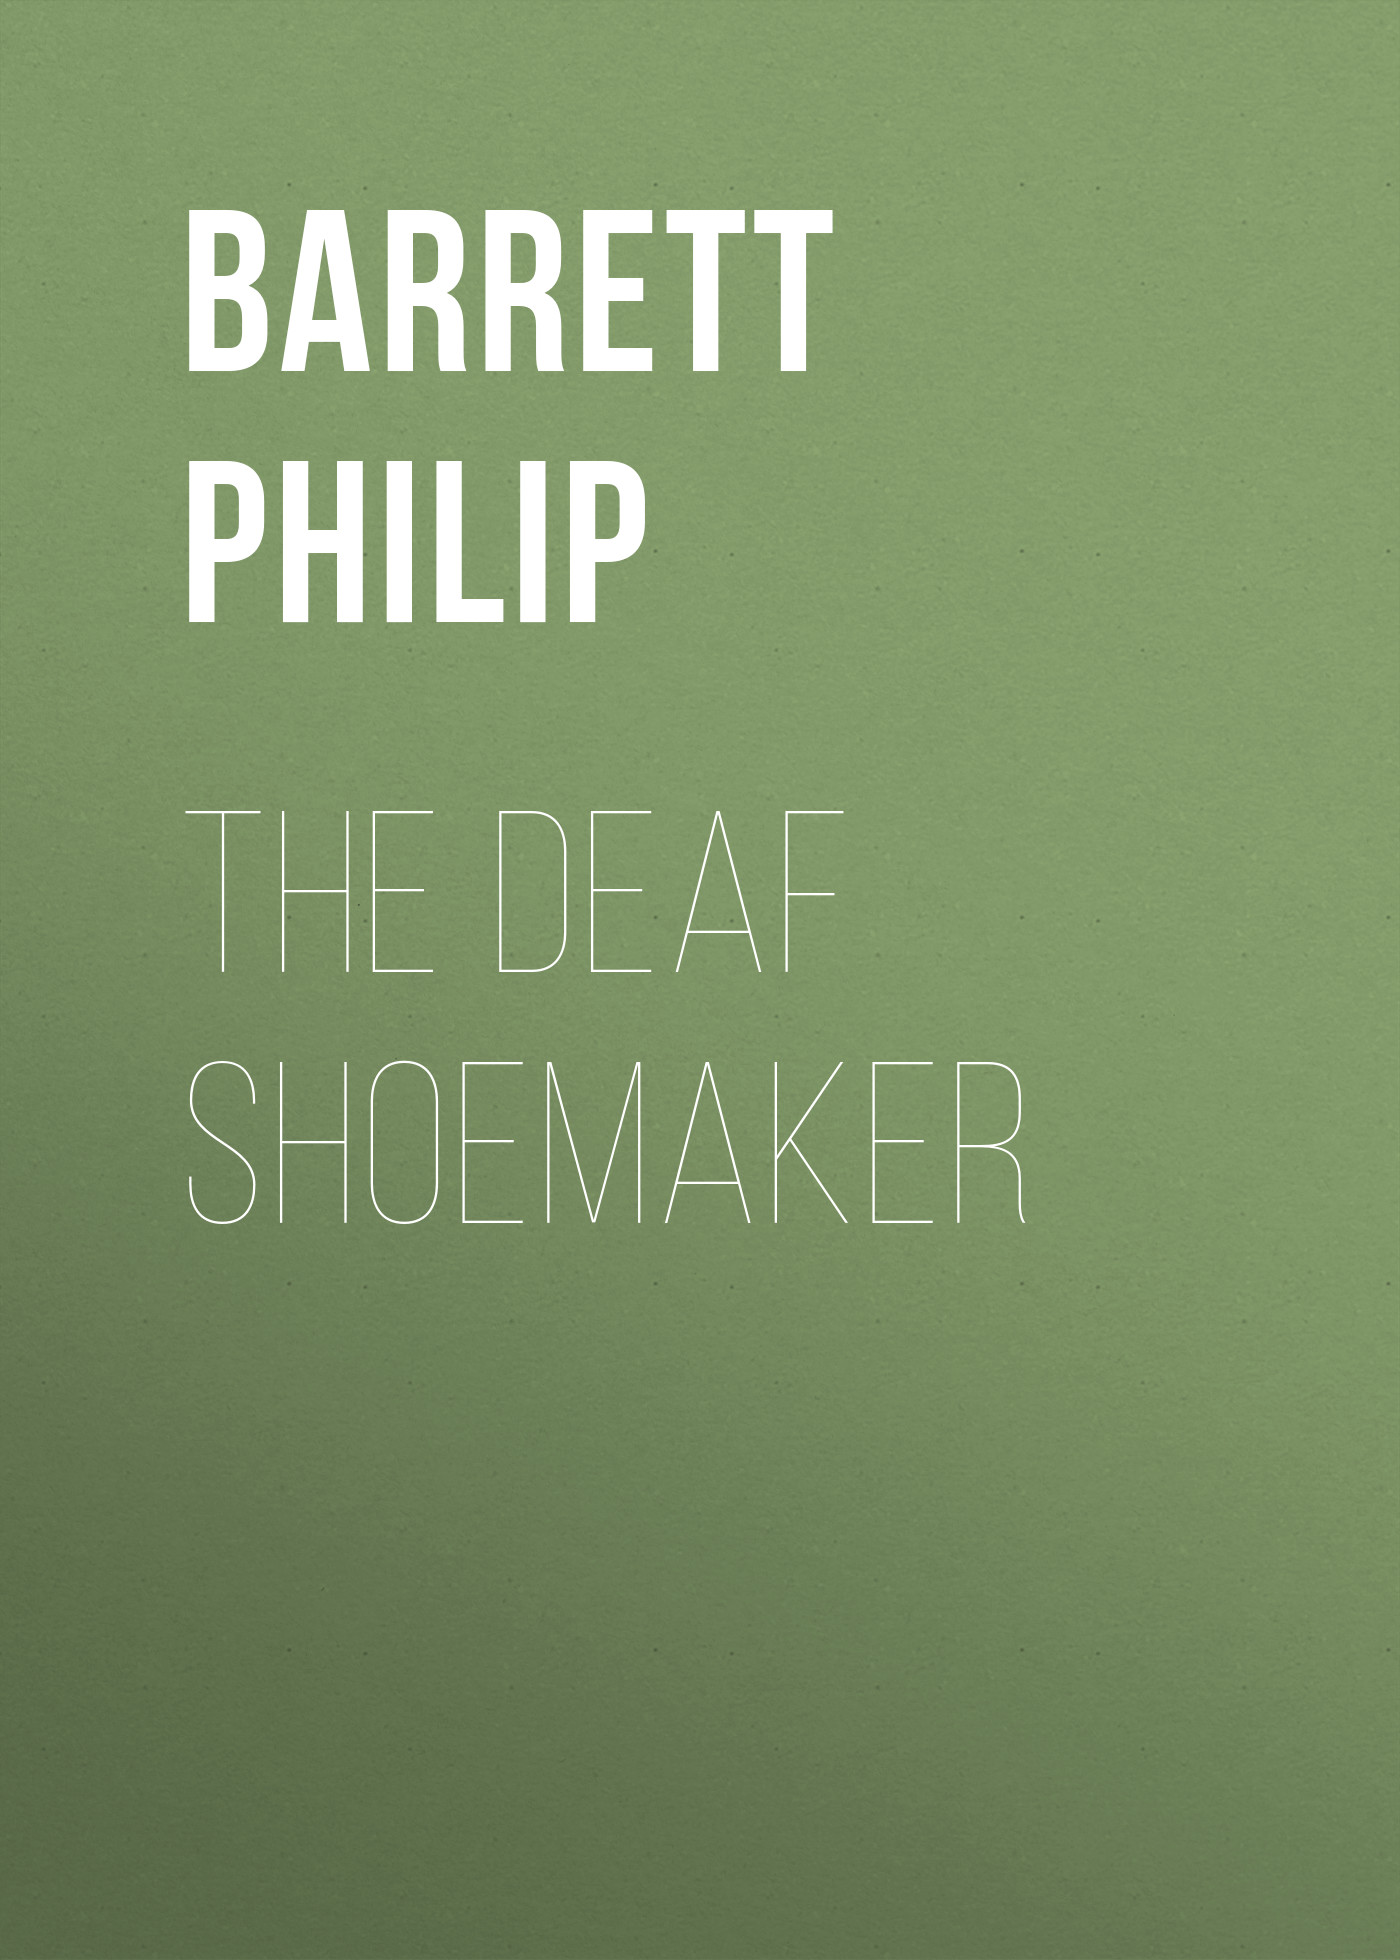 The Deaf Shoemaker